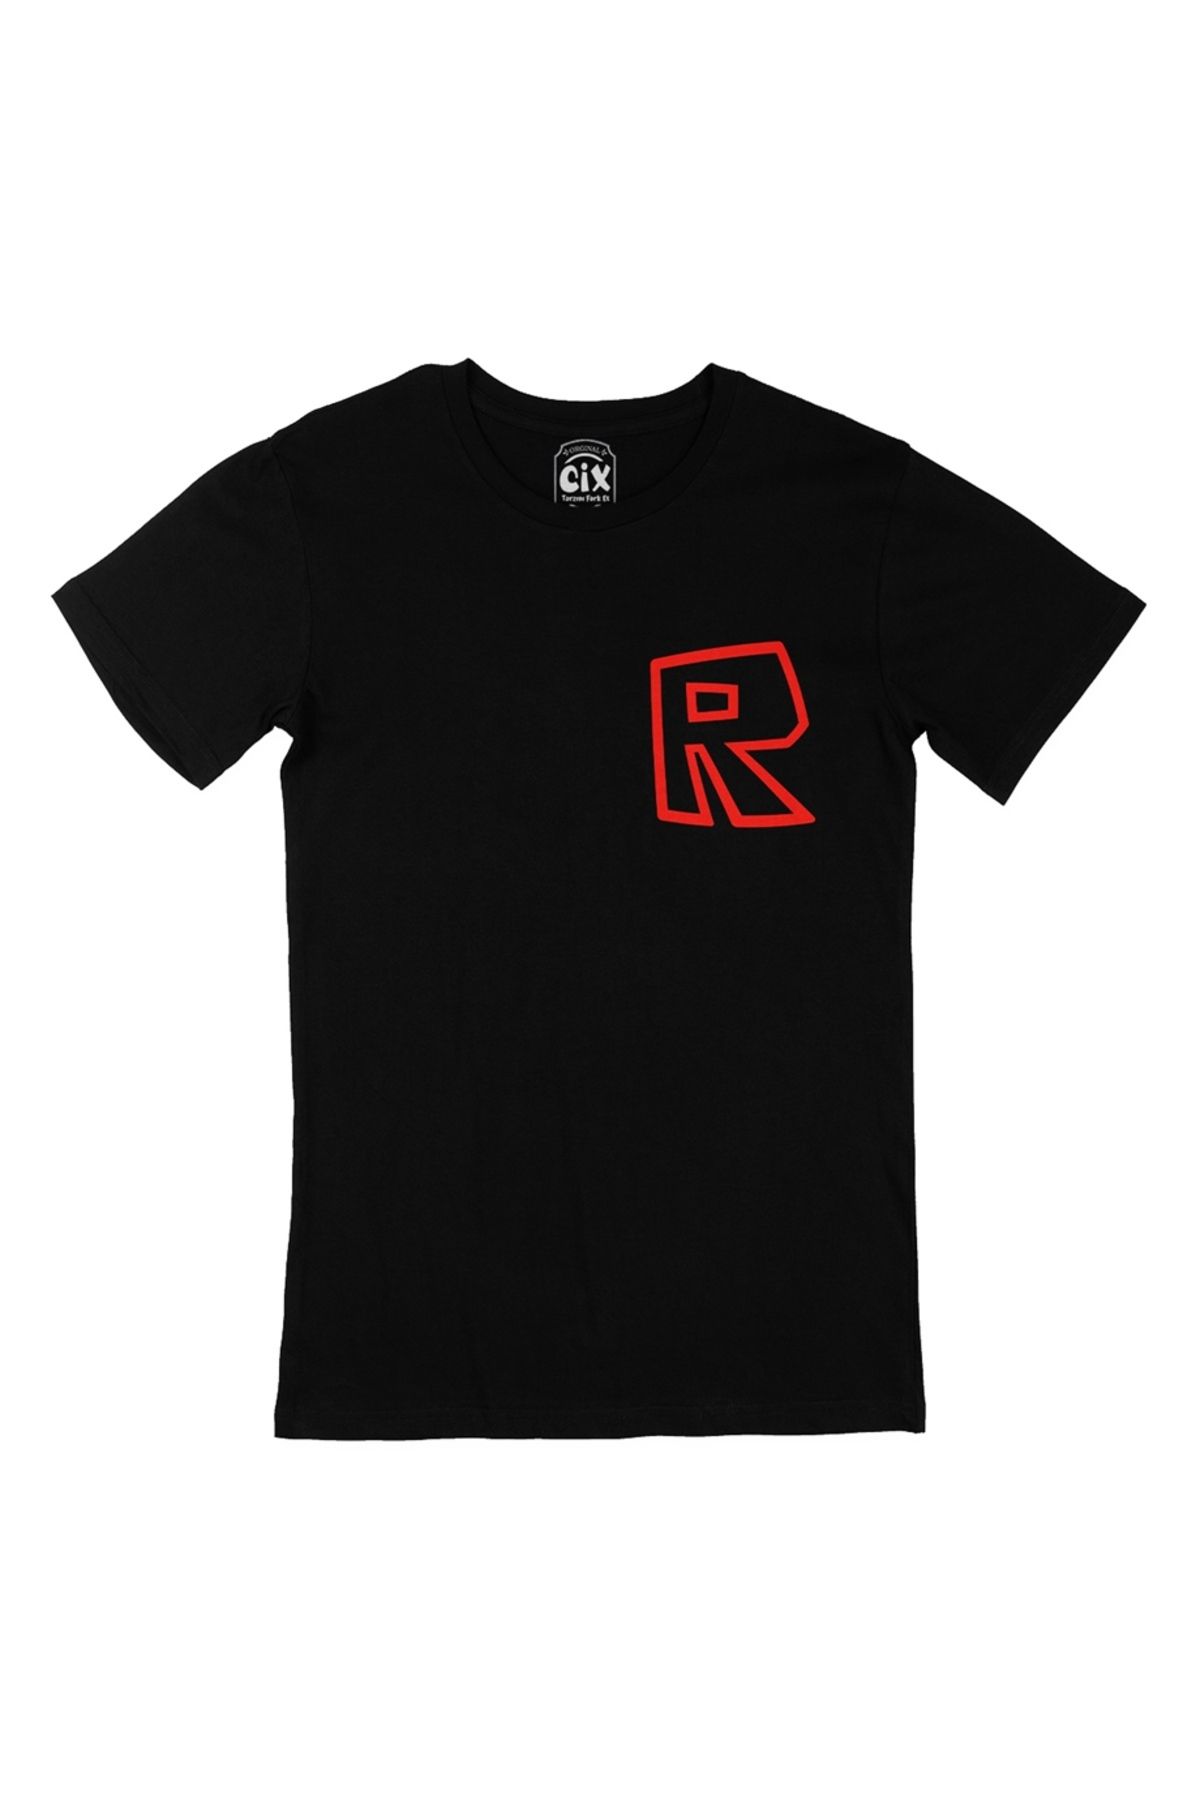 Cix Roblox R Cep Logo Tasarımlı Siyah Tişört